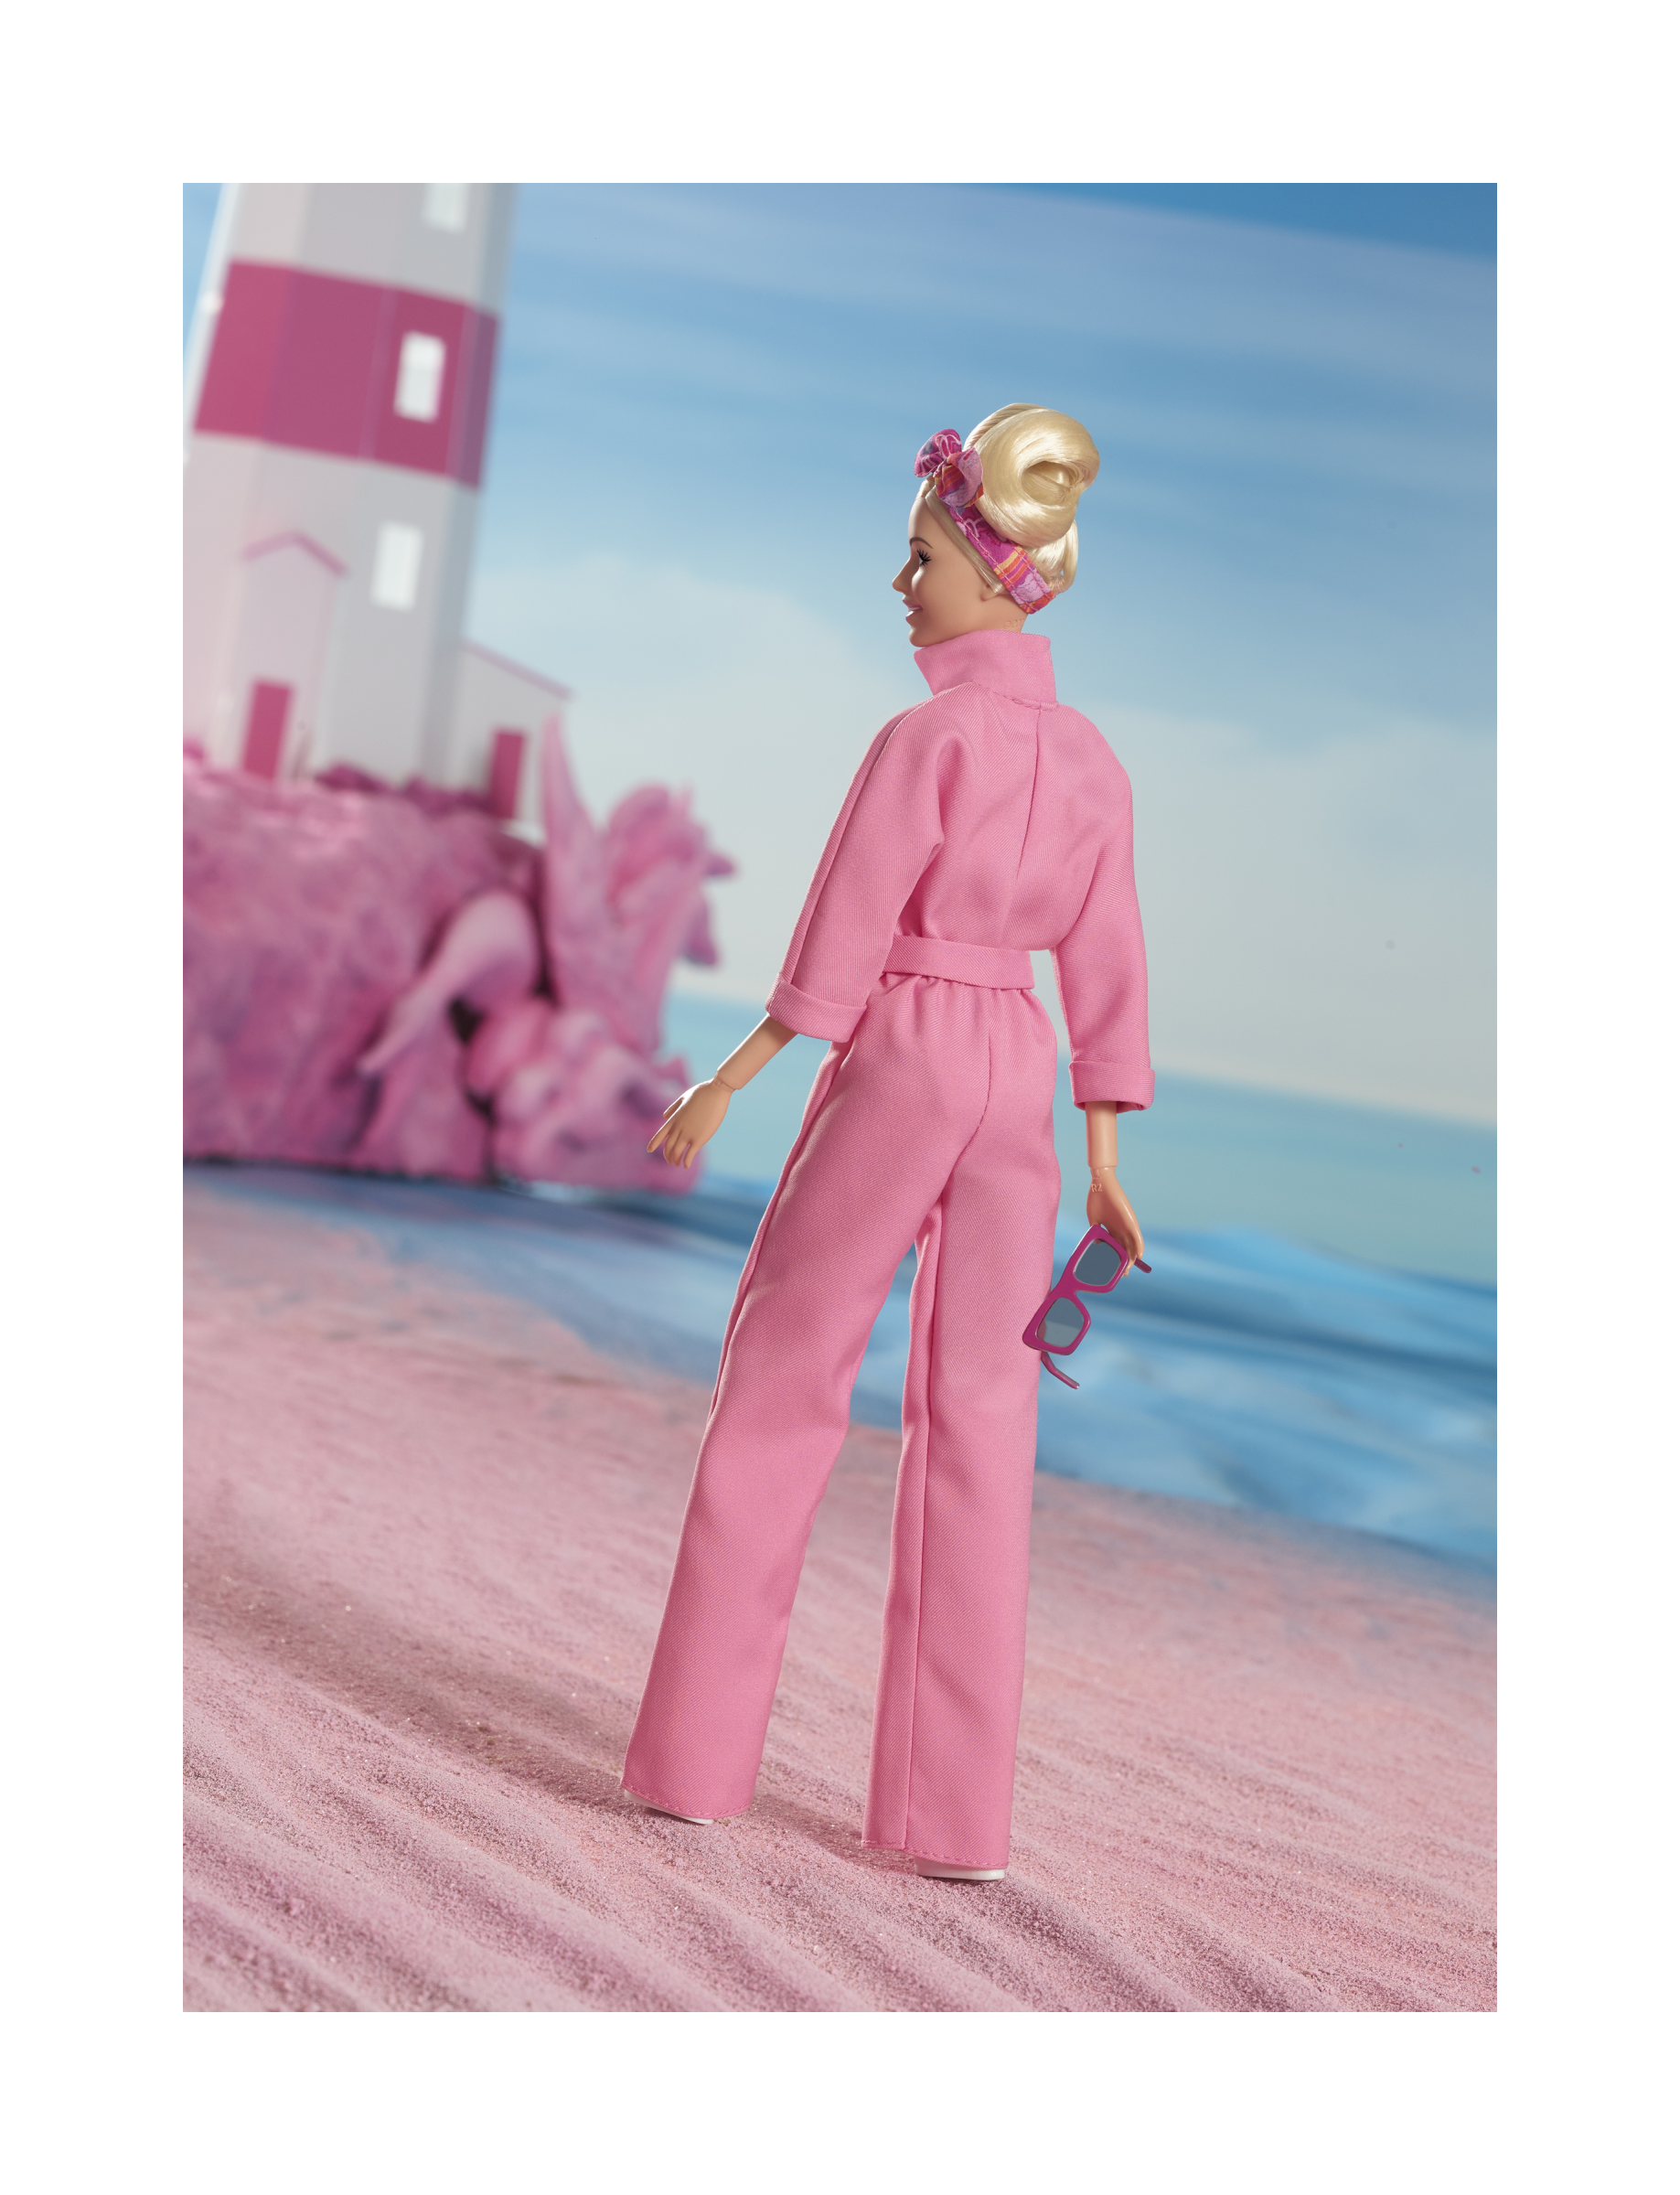 Margot Robbie Con Tuta Pink Power, Bambola Del Film Barbie Da Collezione - Barbie